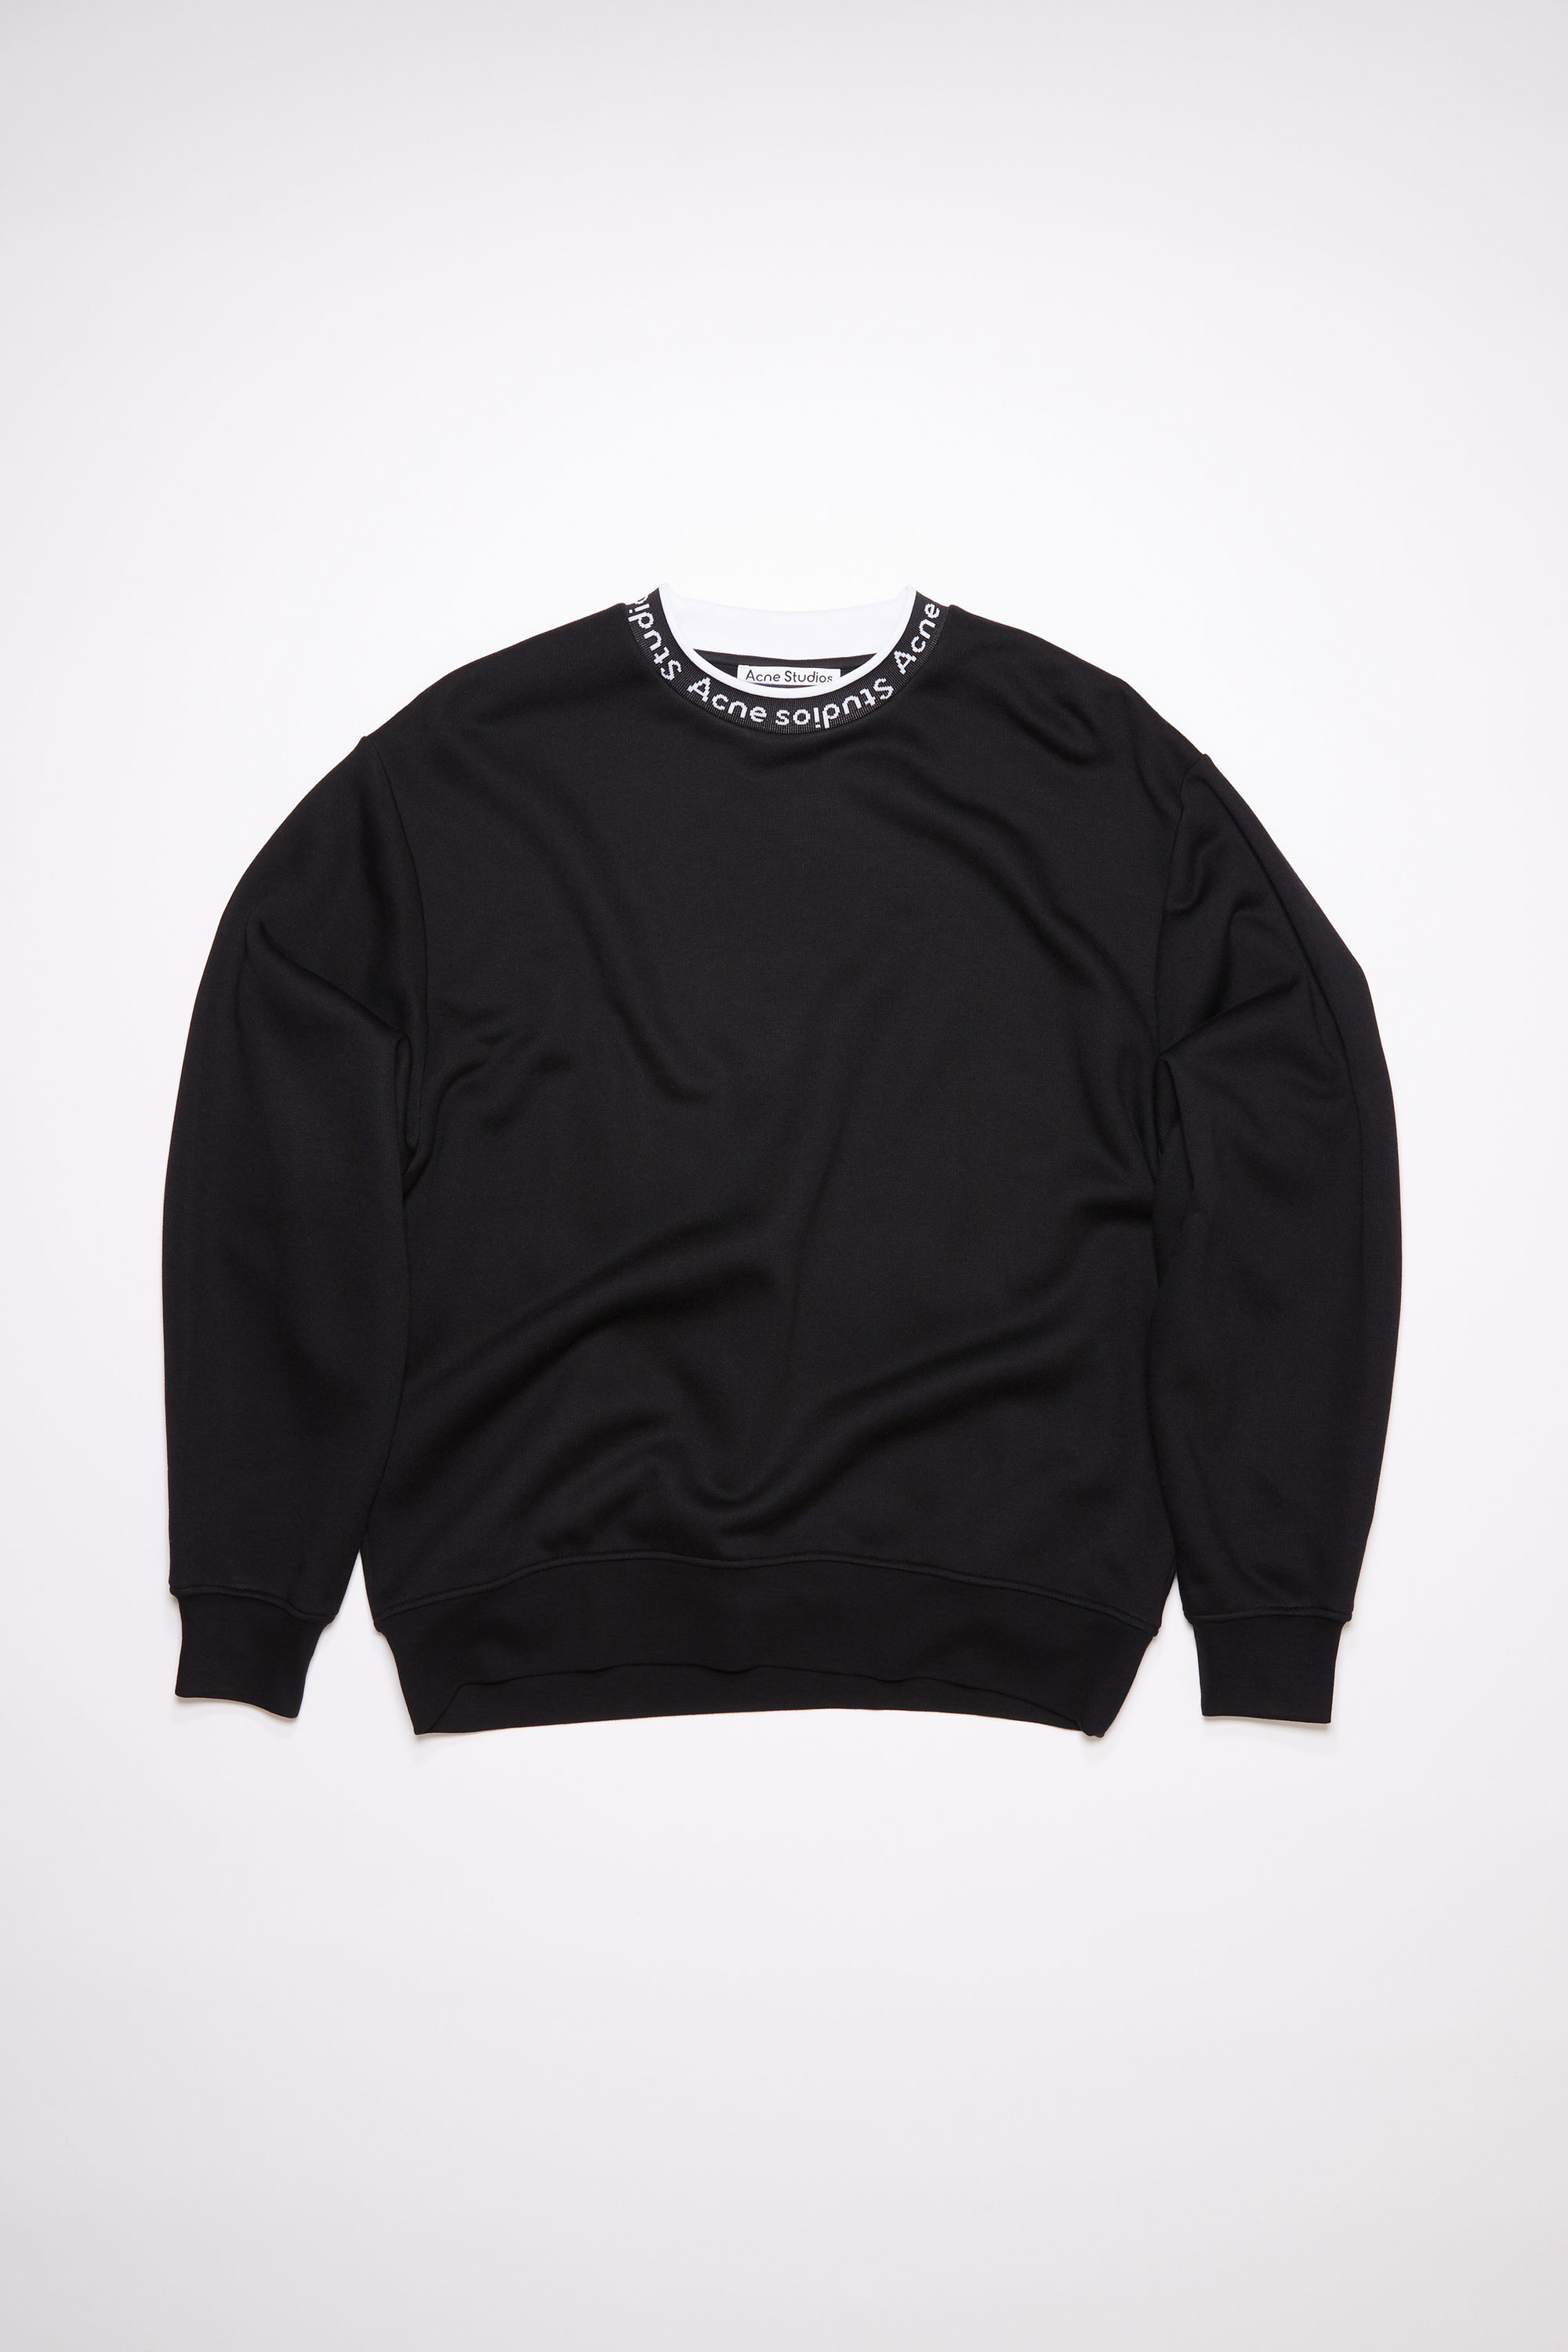 Acne Studios - Logo rib sweatshirt - Black